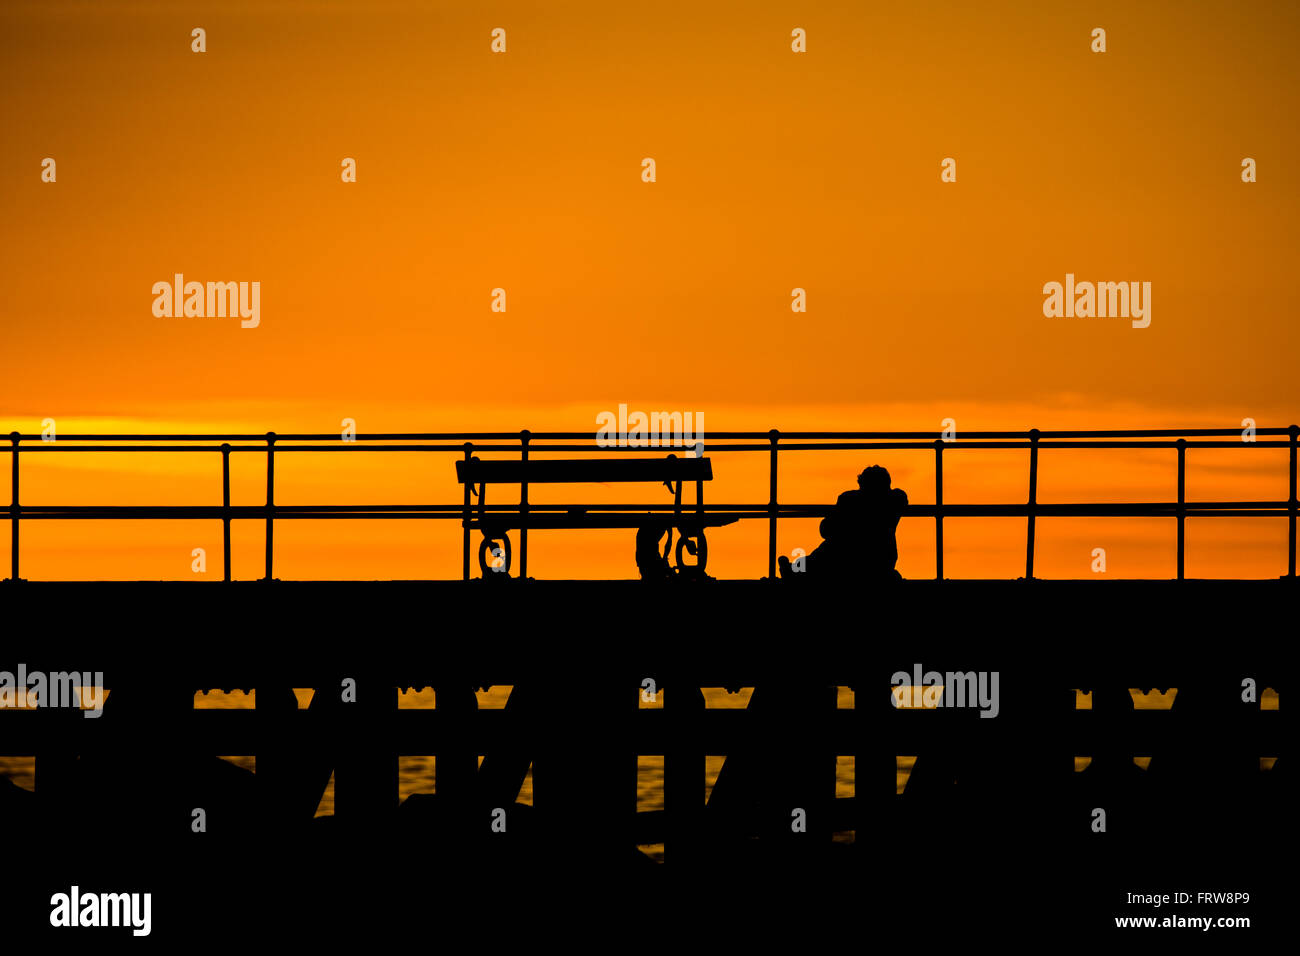 Una persona appoggiata contro le ringhiere su un pontile a guardare il tramonto Foto Stock